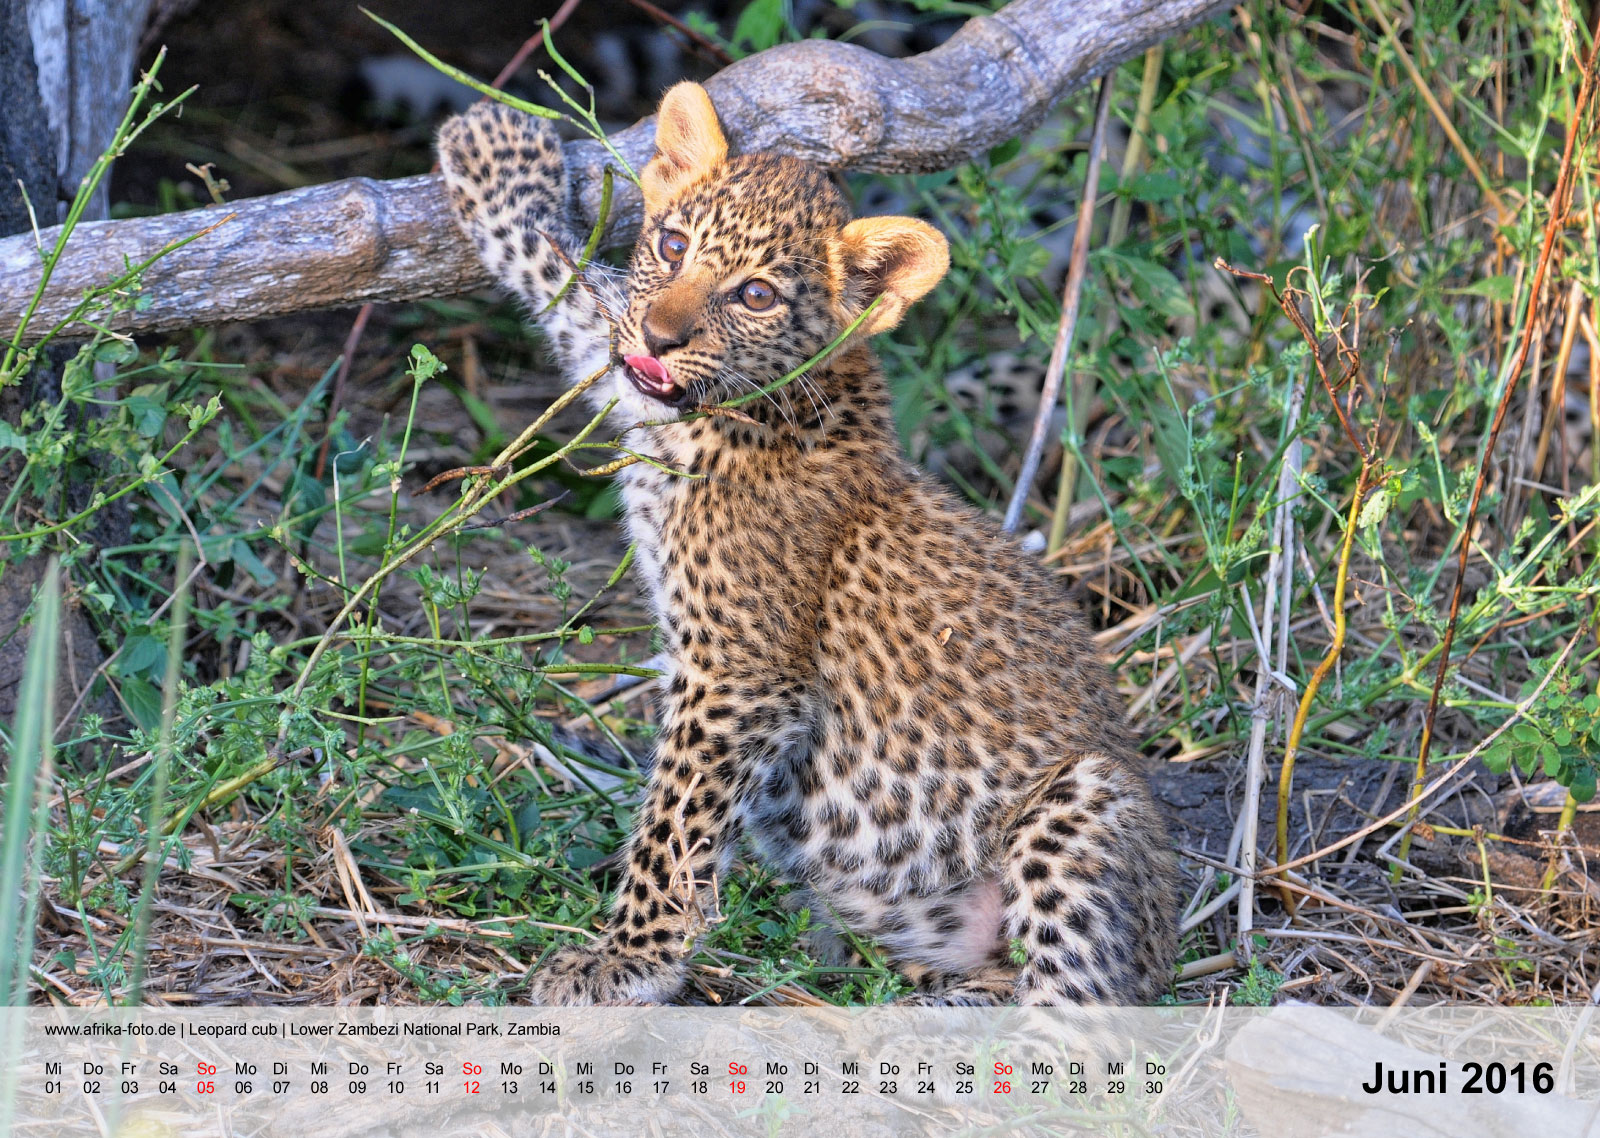 Leopard cub | Lower Zambezi National Park, Zambia | Kalender 2016 - Juni